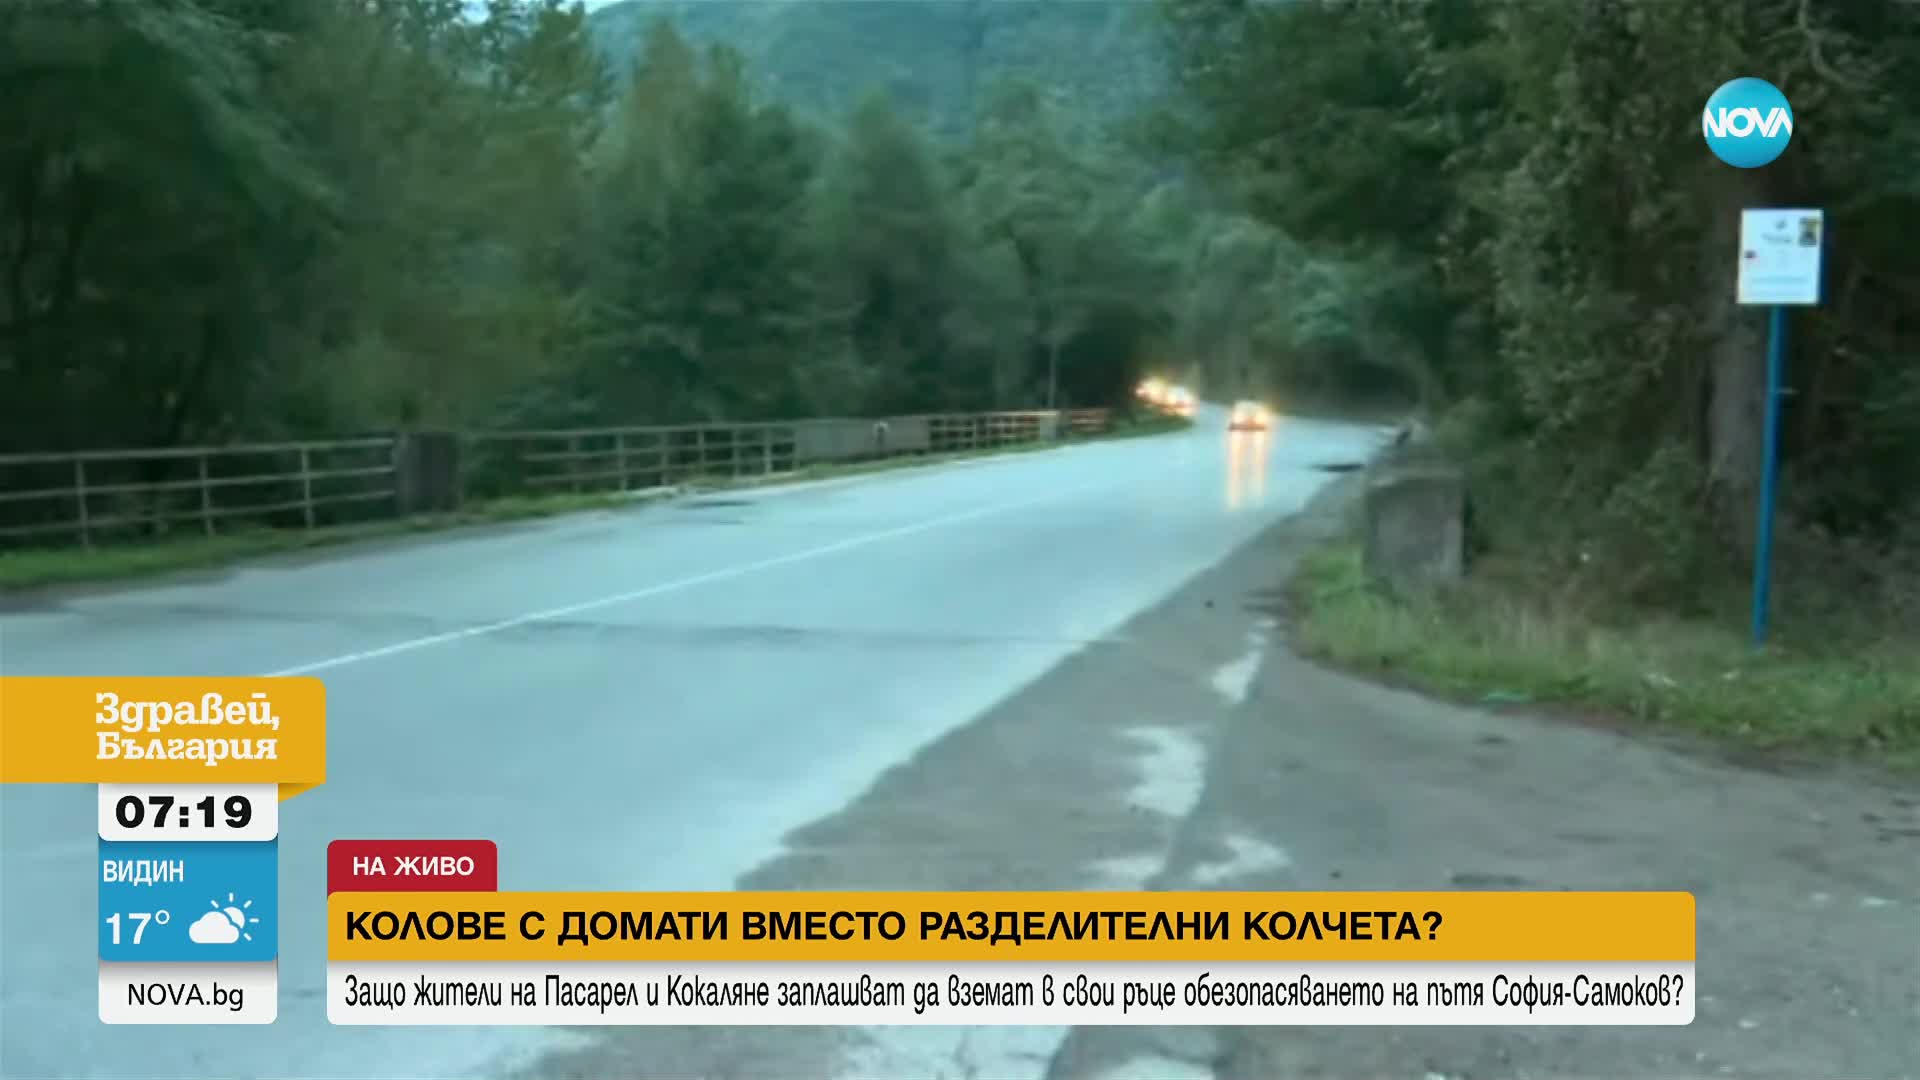 Жители на две села настояват за поставяне на колчета на опасен участък от пътя София-Самоков